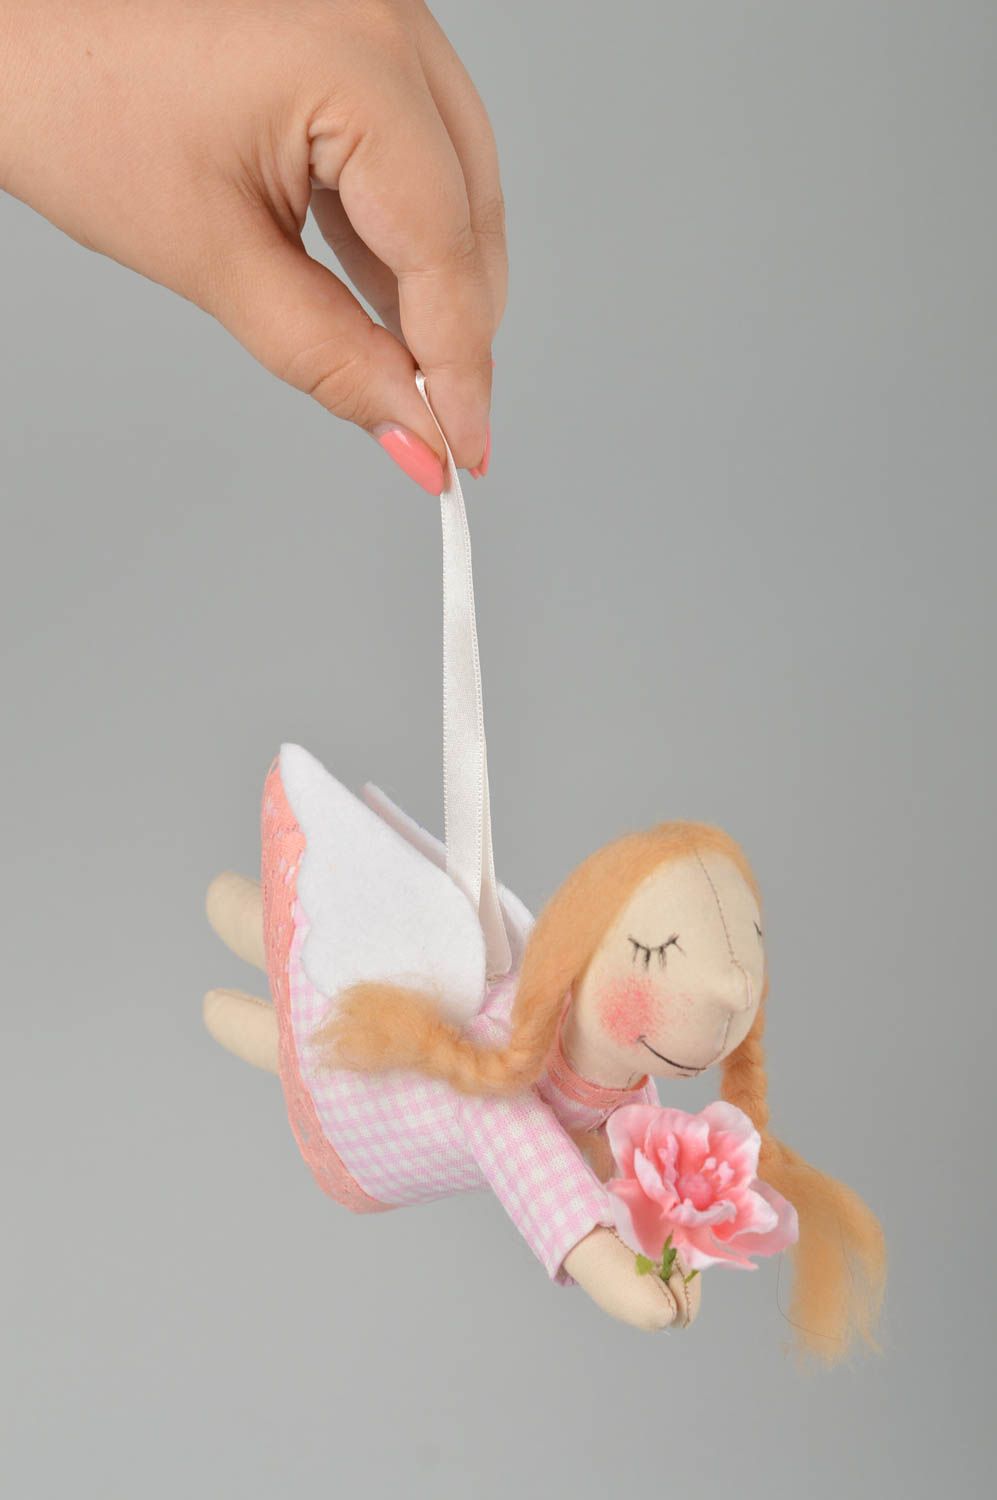 Интерьерная игрушка ручной работы мягкая игрушка ангел сувенир в подарок фото 3